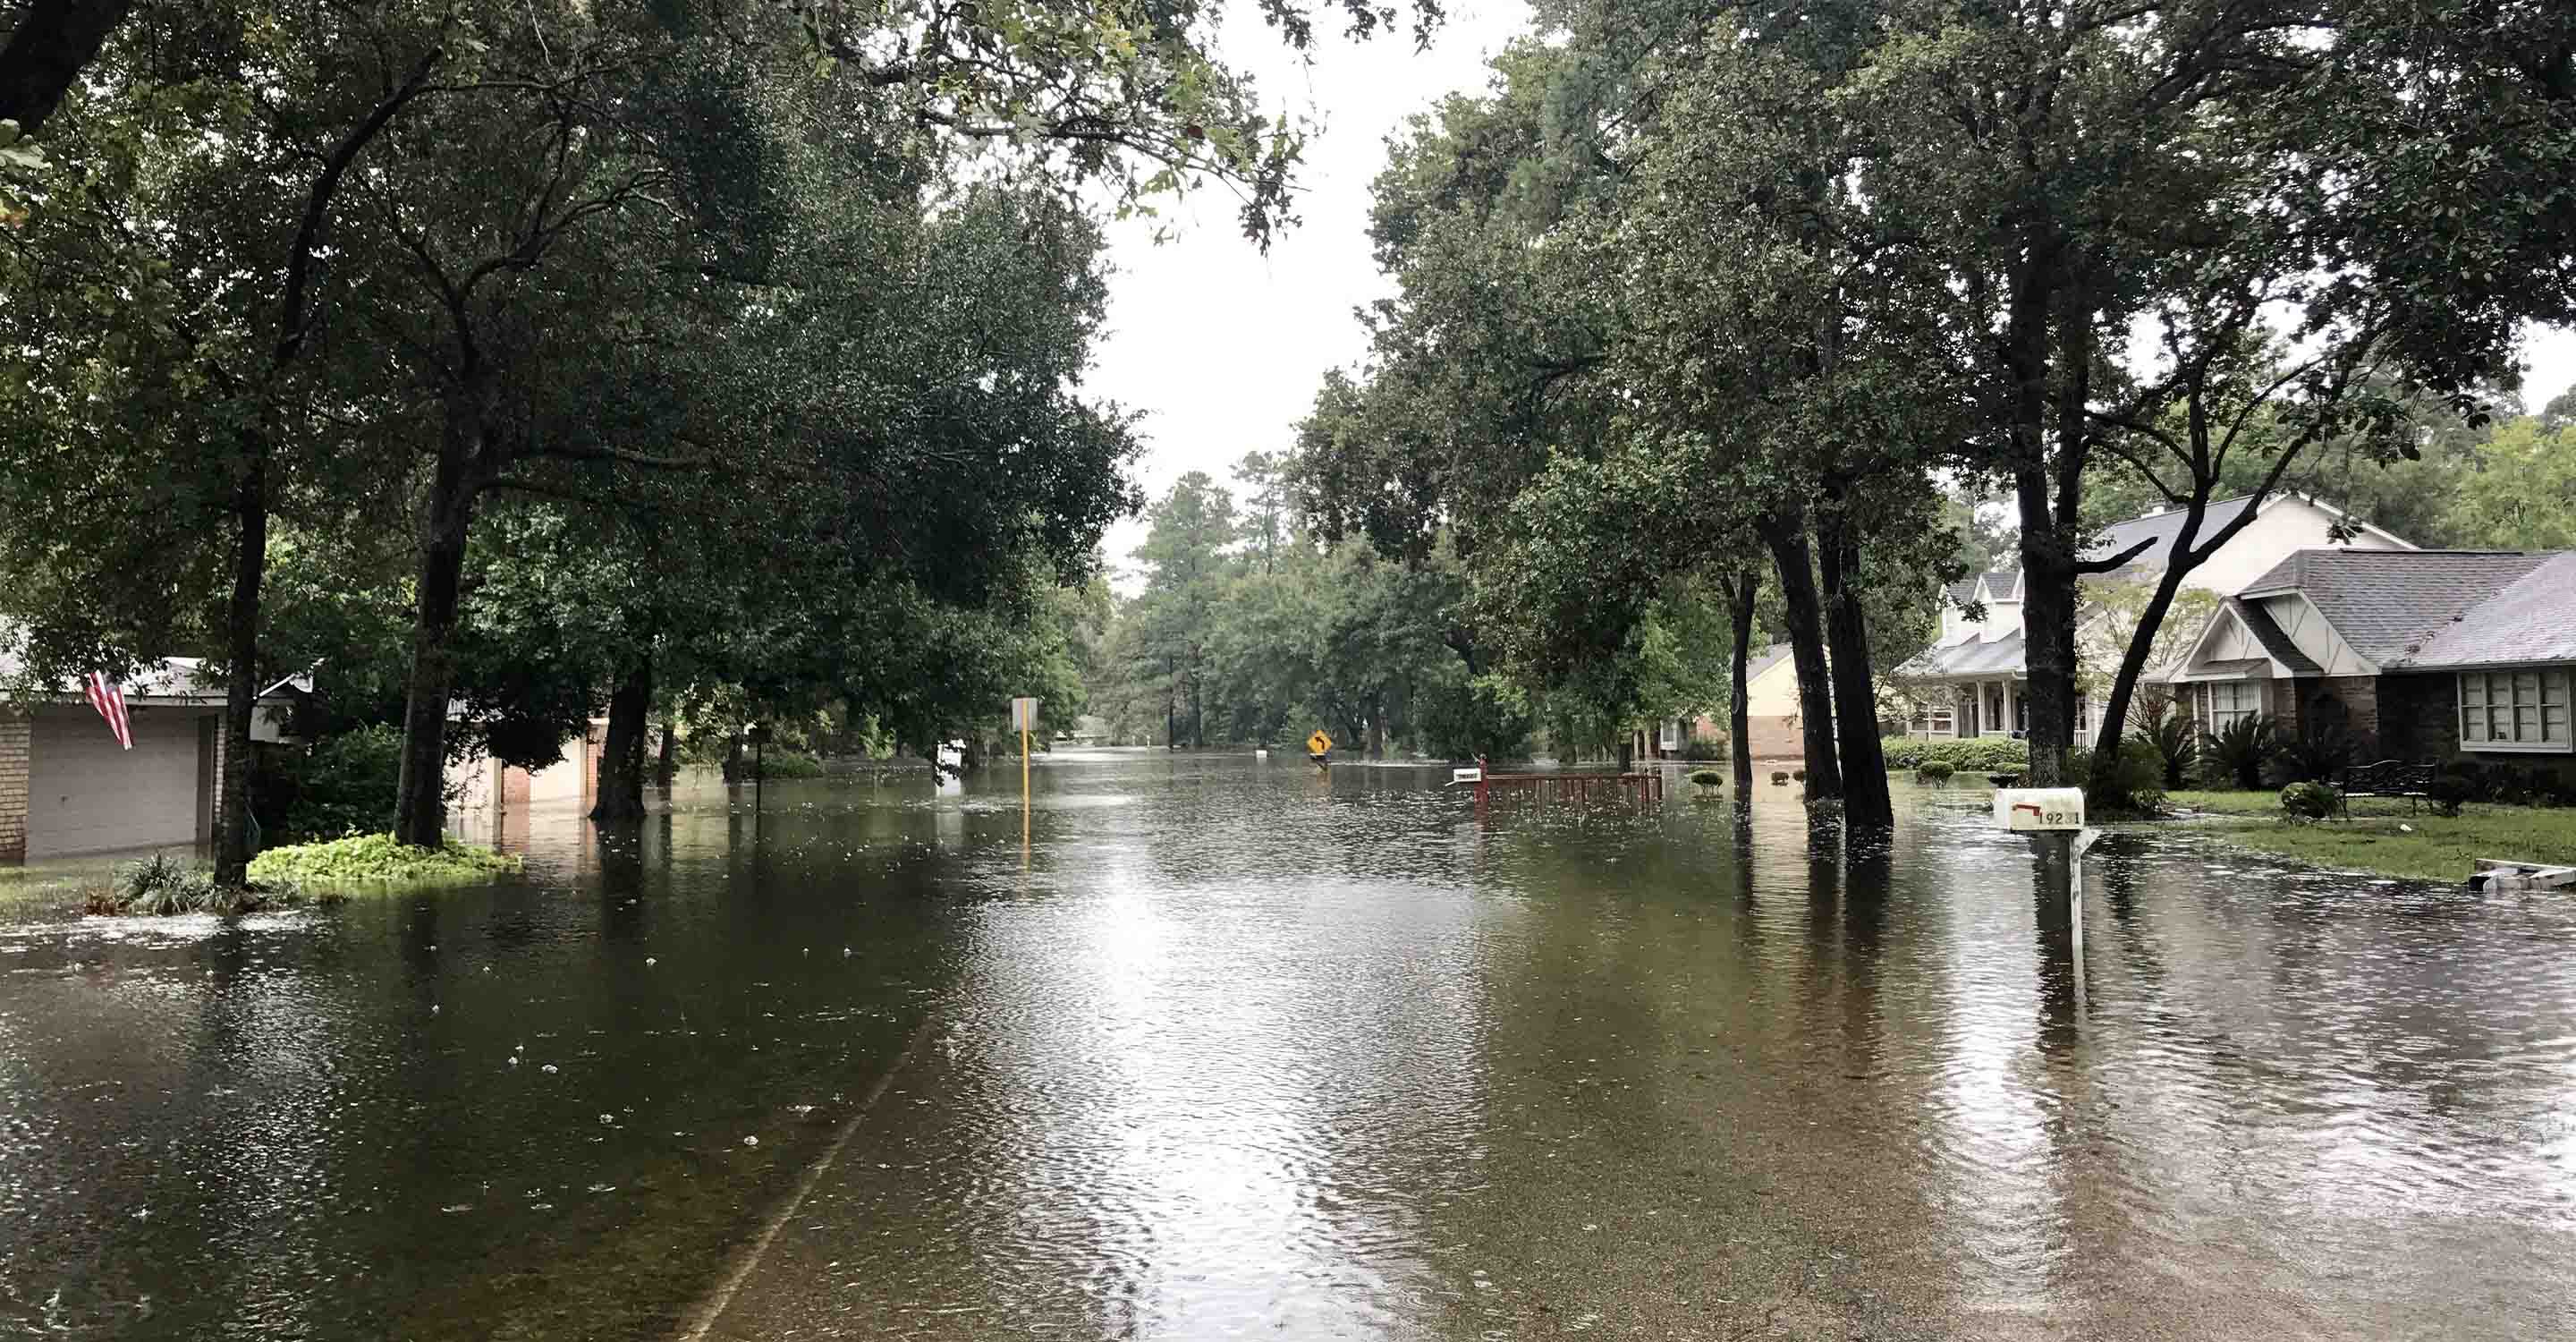 Anteprima di un articolo di notizie intitolato Avviso sulla qualità dell'aria interna: avvisi di inondazioni improvvise nel Texas orientale